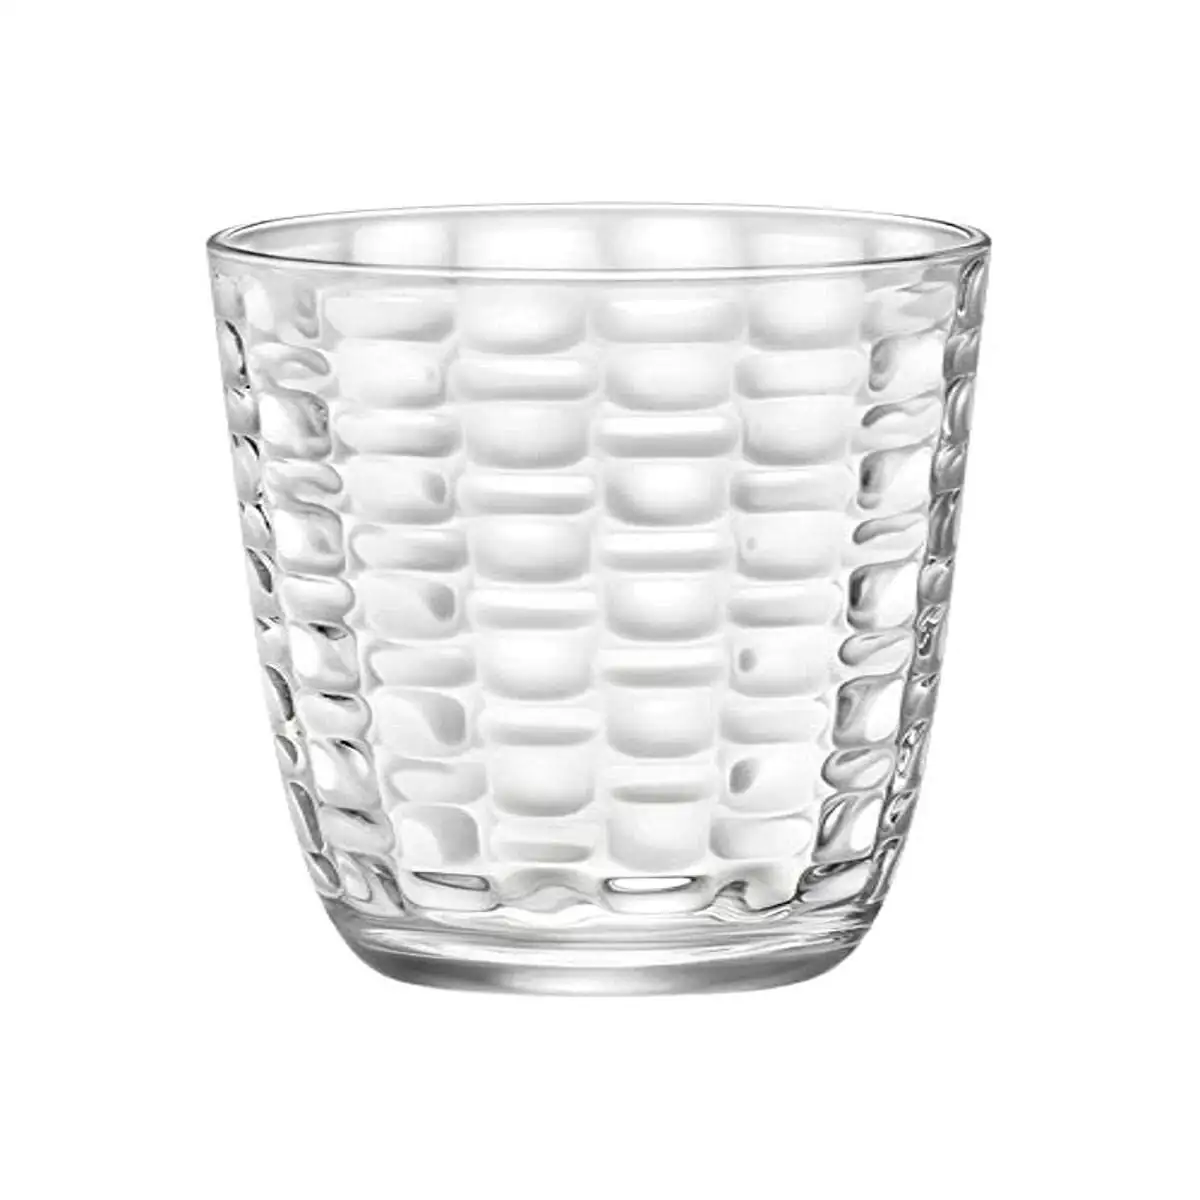 Set de verres bormioli rocco mat 6 unites transparent verre 390 ml_3656. DIAYTAR SENEGAL - Votre Source de Découvertes Shopping. Découvrez des trésors dans notre boutique en ligne, allant des articles artisanaux aux innovations modernes.